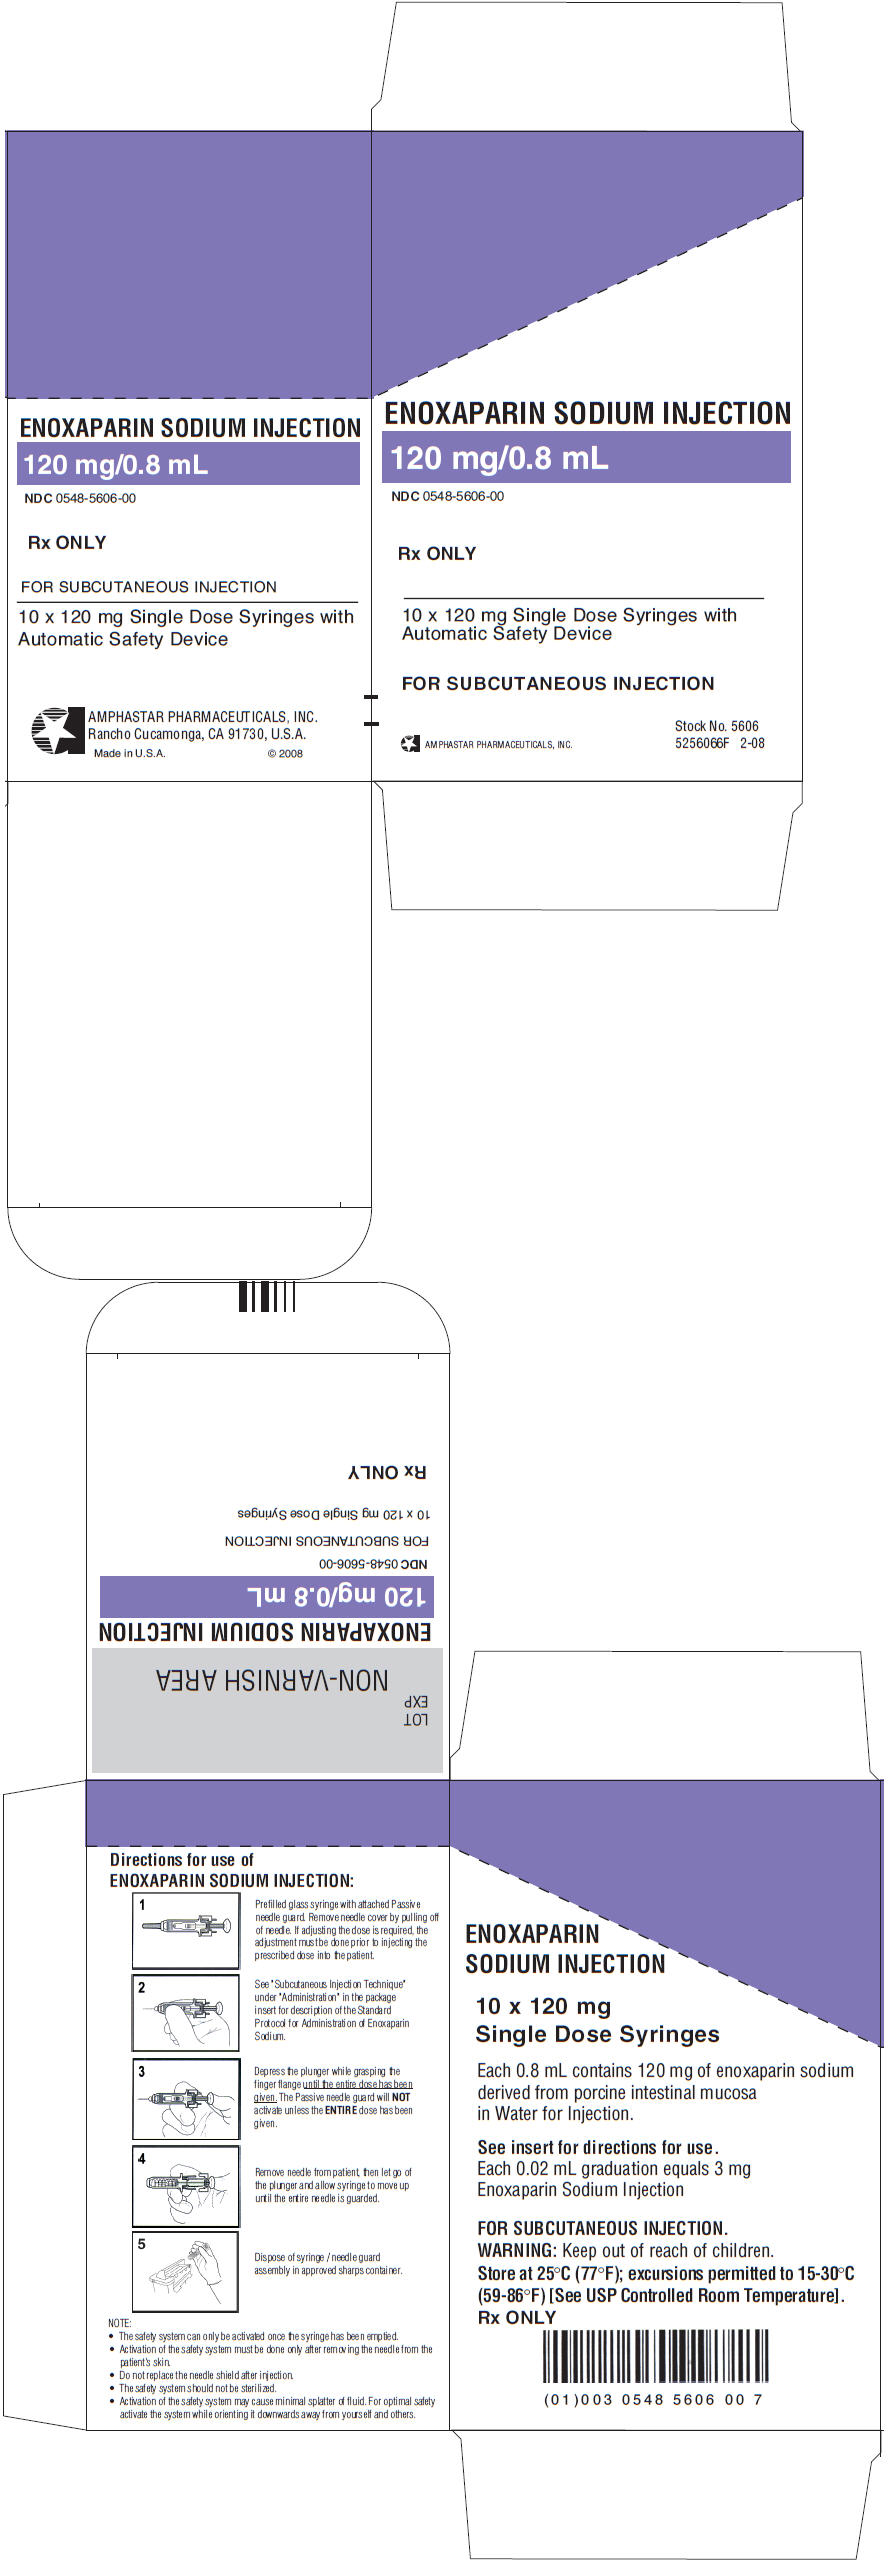 PRINCIPAL DISPLAY PANEL - 10 x 120 mg Syringe Carton